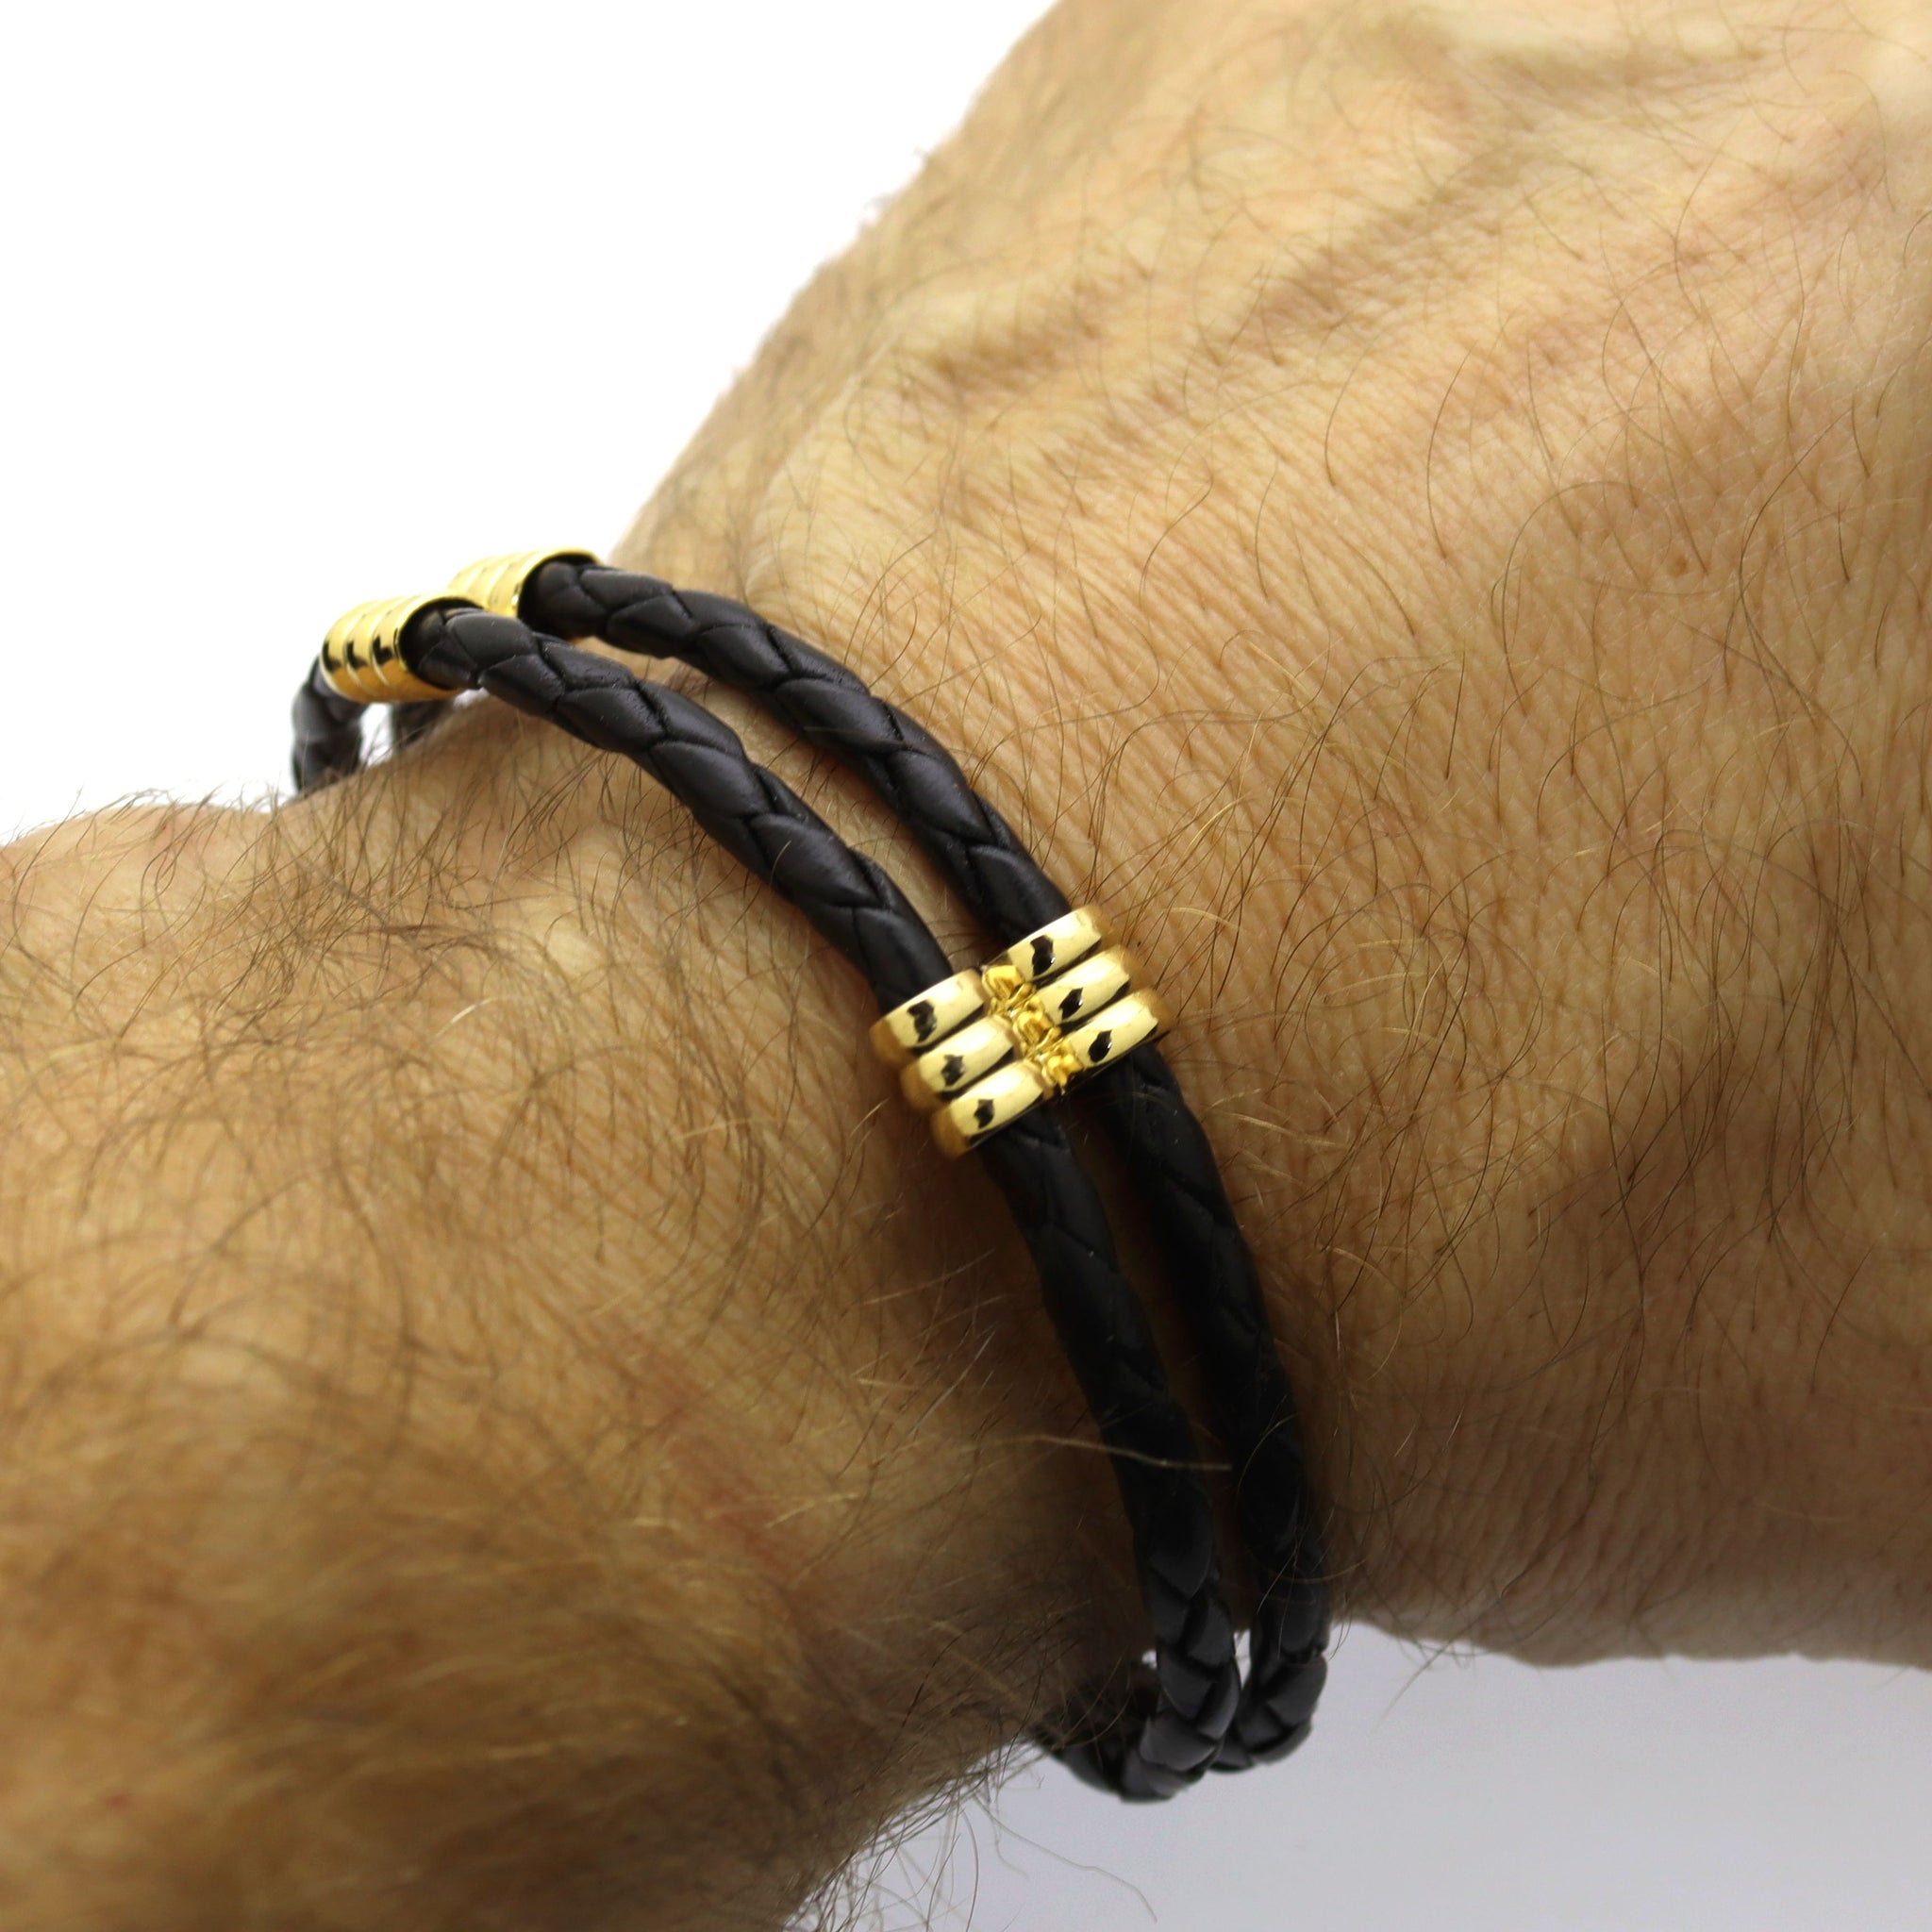 Cool Leather Bracelets for Men and Women Punk Rock Cuff Bracelet Best Gifts  | eBay